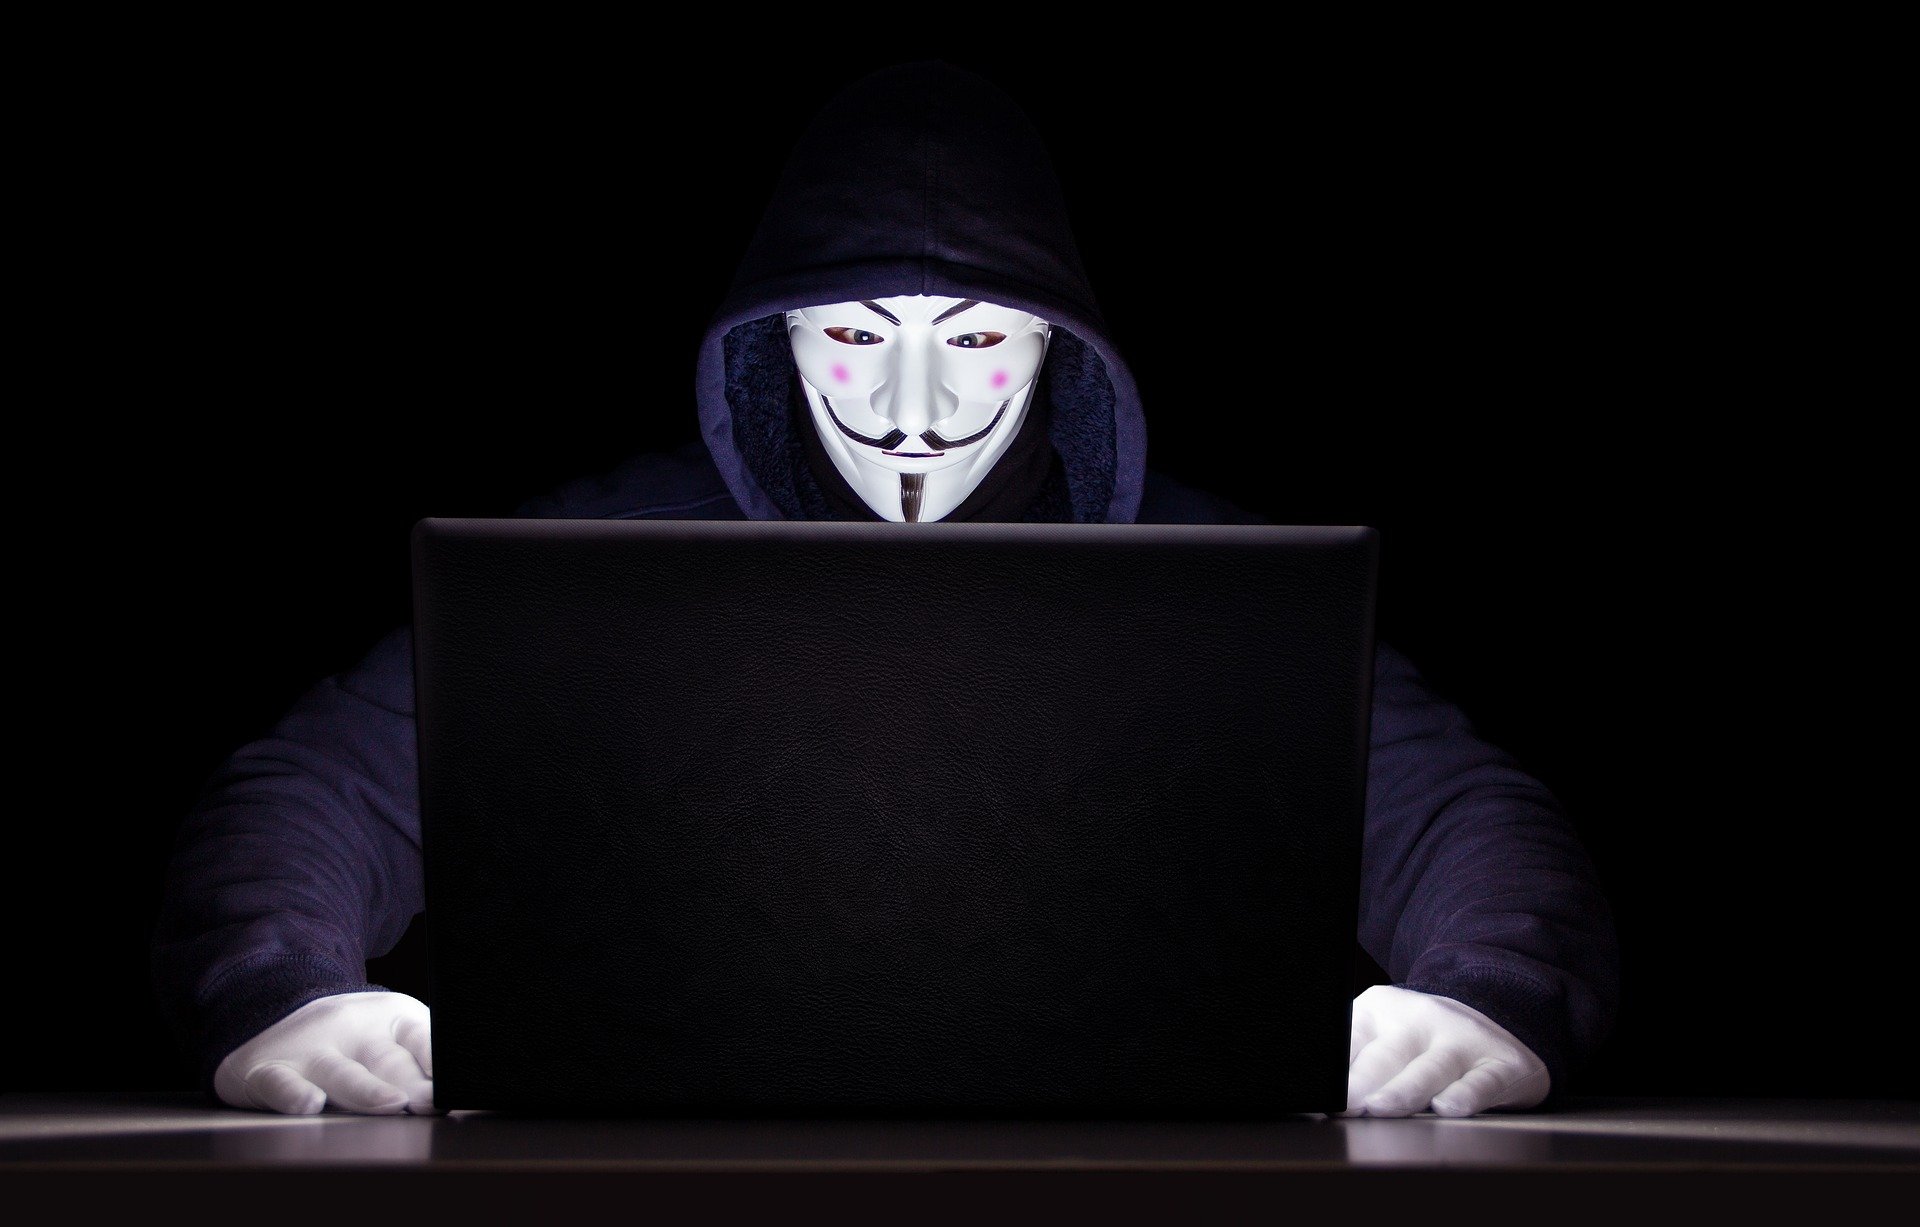 Els hackers d'Anonymous fan sonar l'himne ucraïnès a la televisió russa